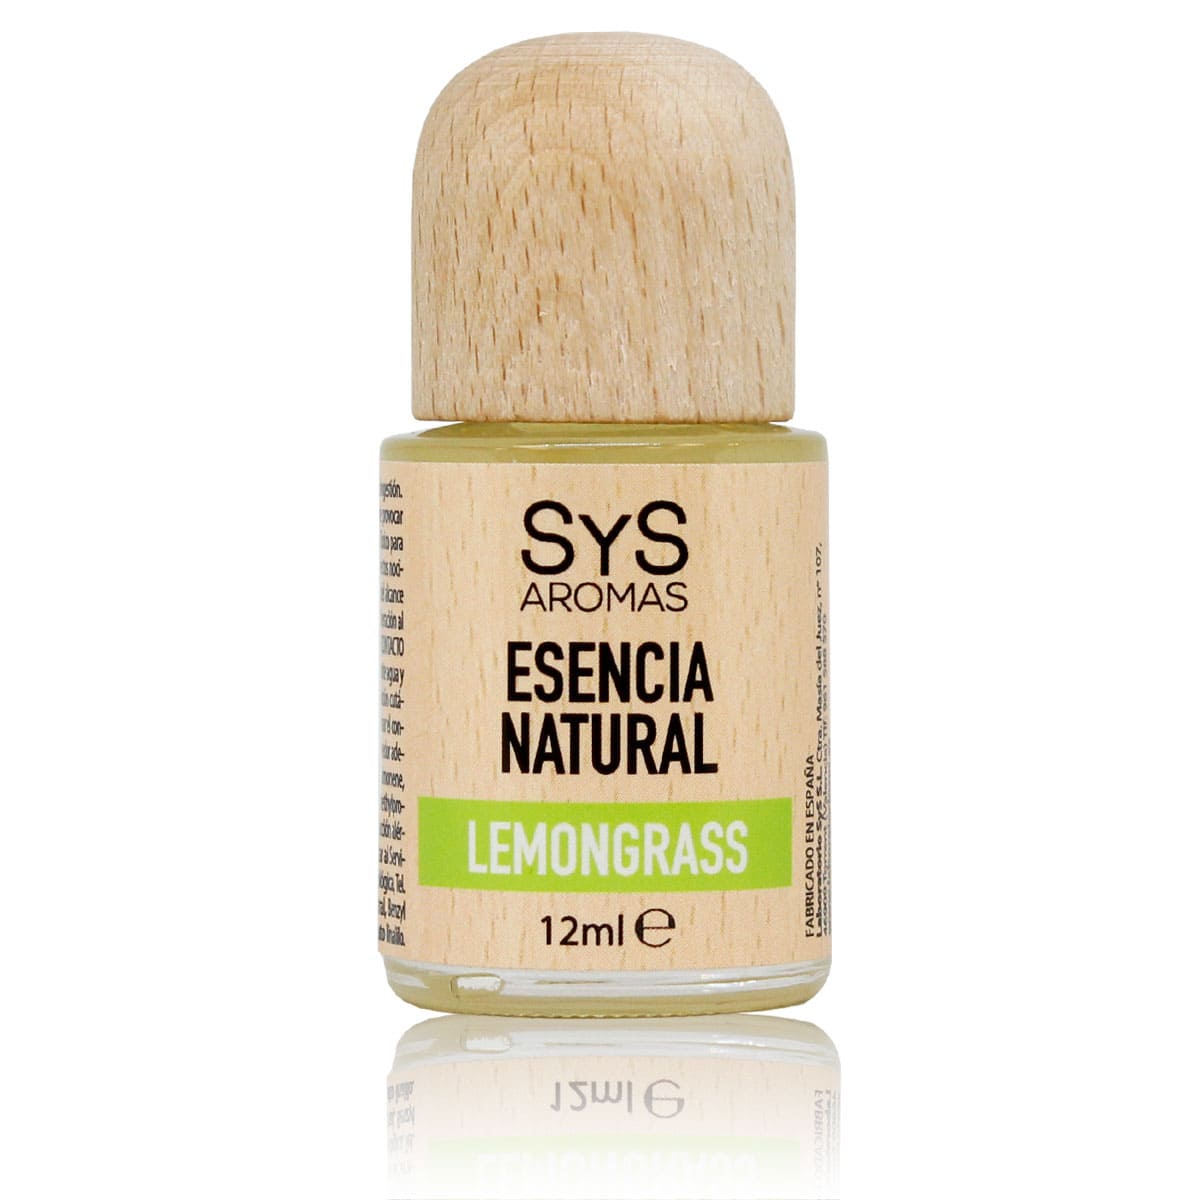 Buy Lemongrass Essence 12ml SYS Aromas